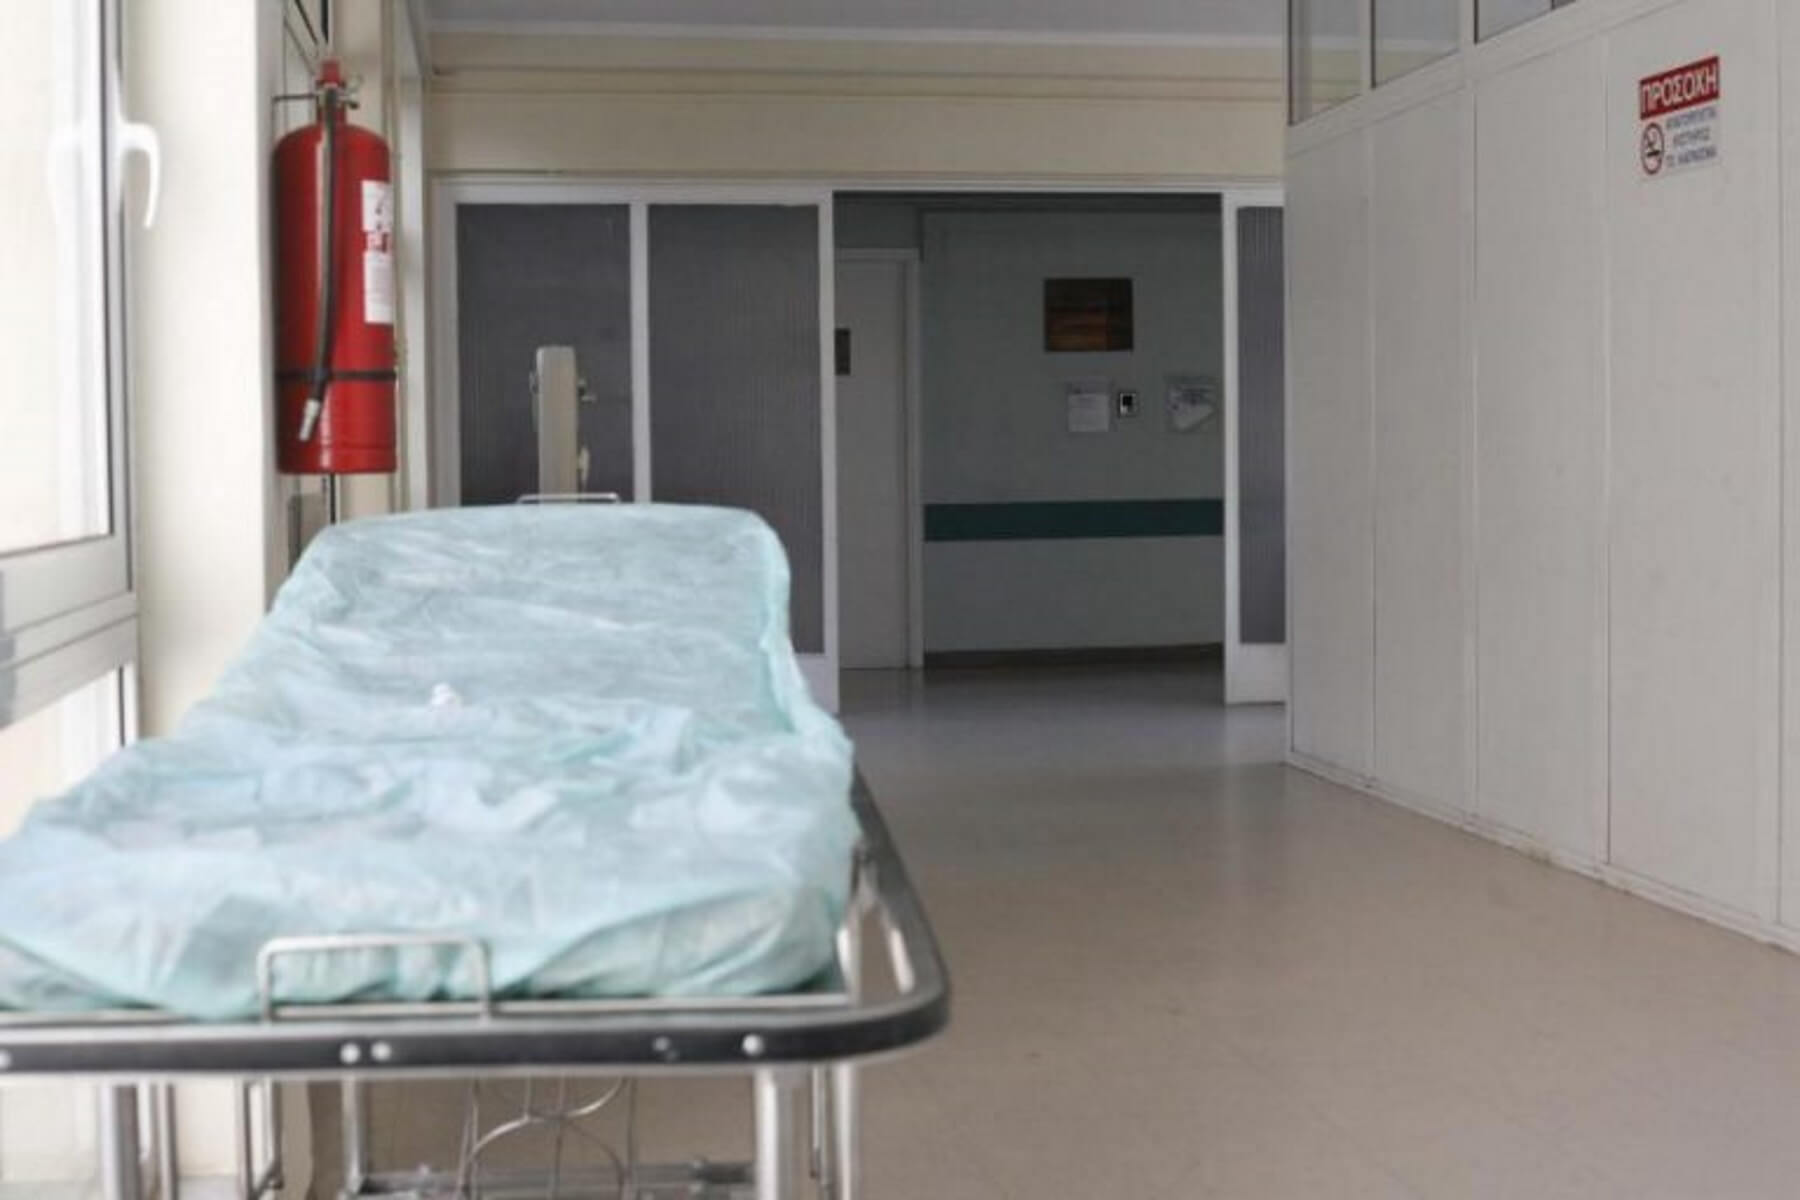 Δύο νέοι θάνατοι από Η1Ν1 στο Αχιλλοπούλειο νοσοκομείο του Βόλου